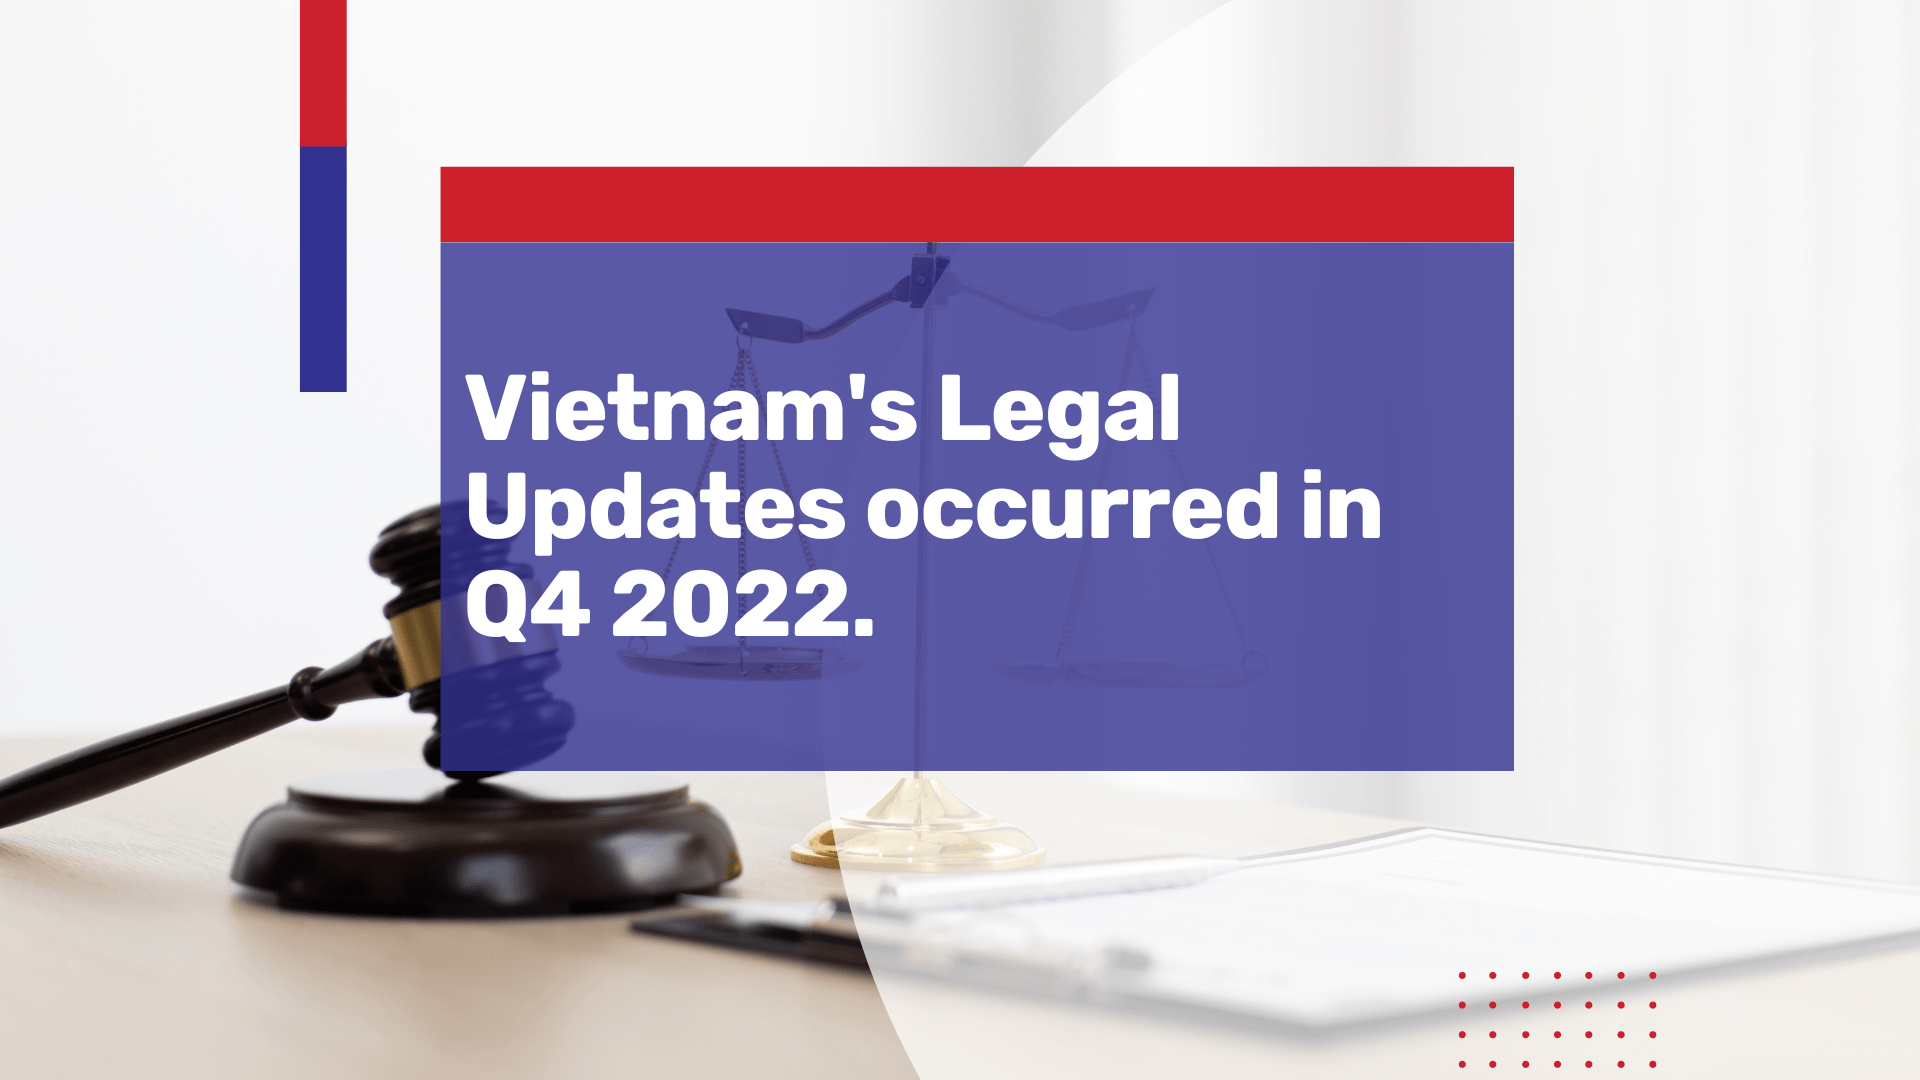 vietnam legal updates q4 2022